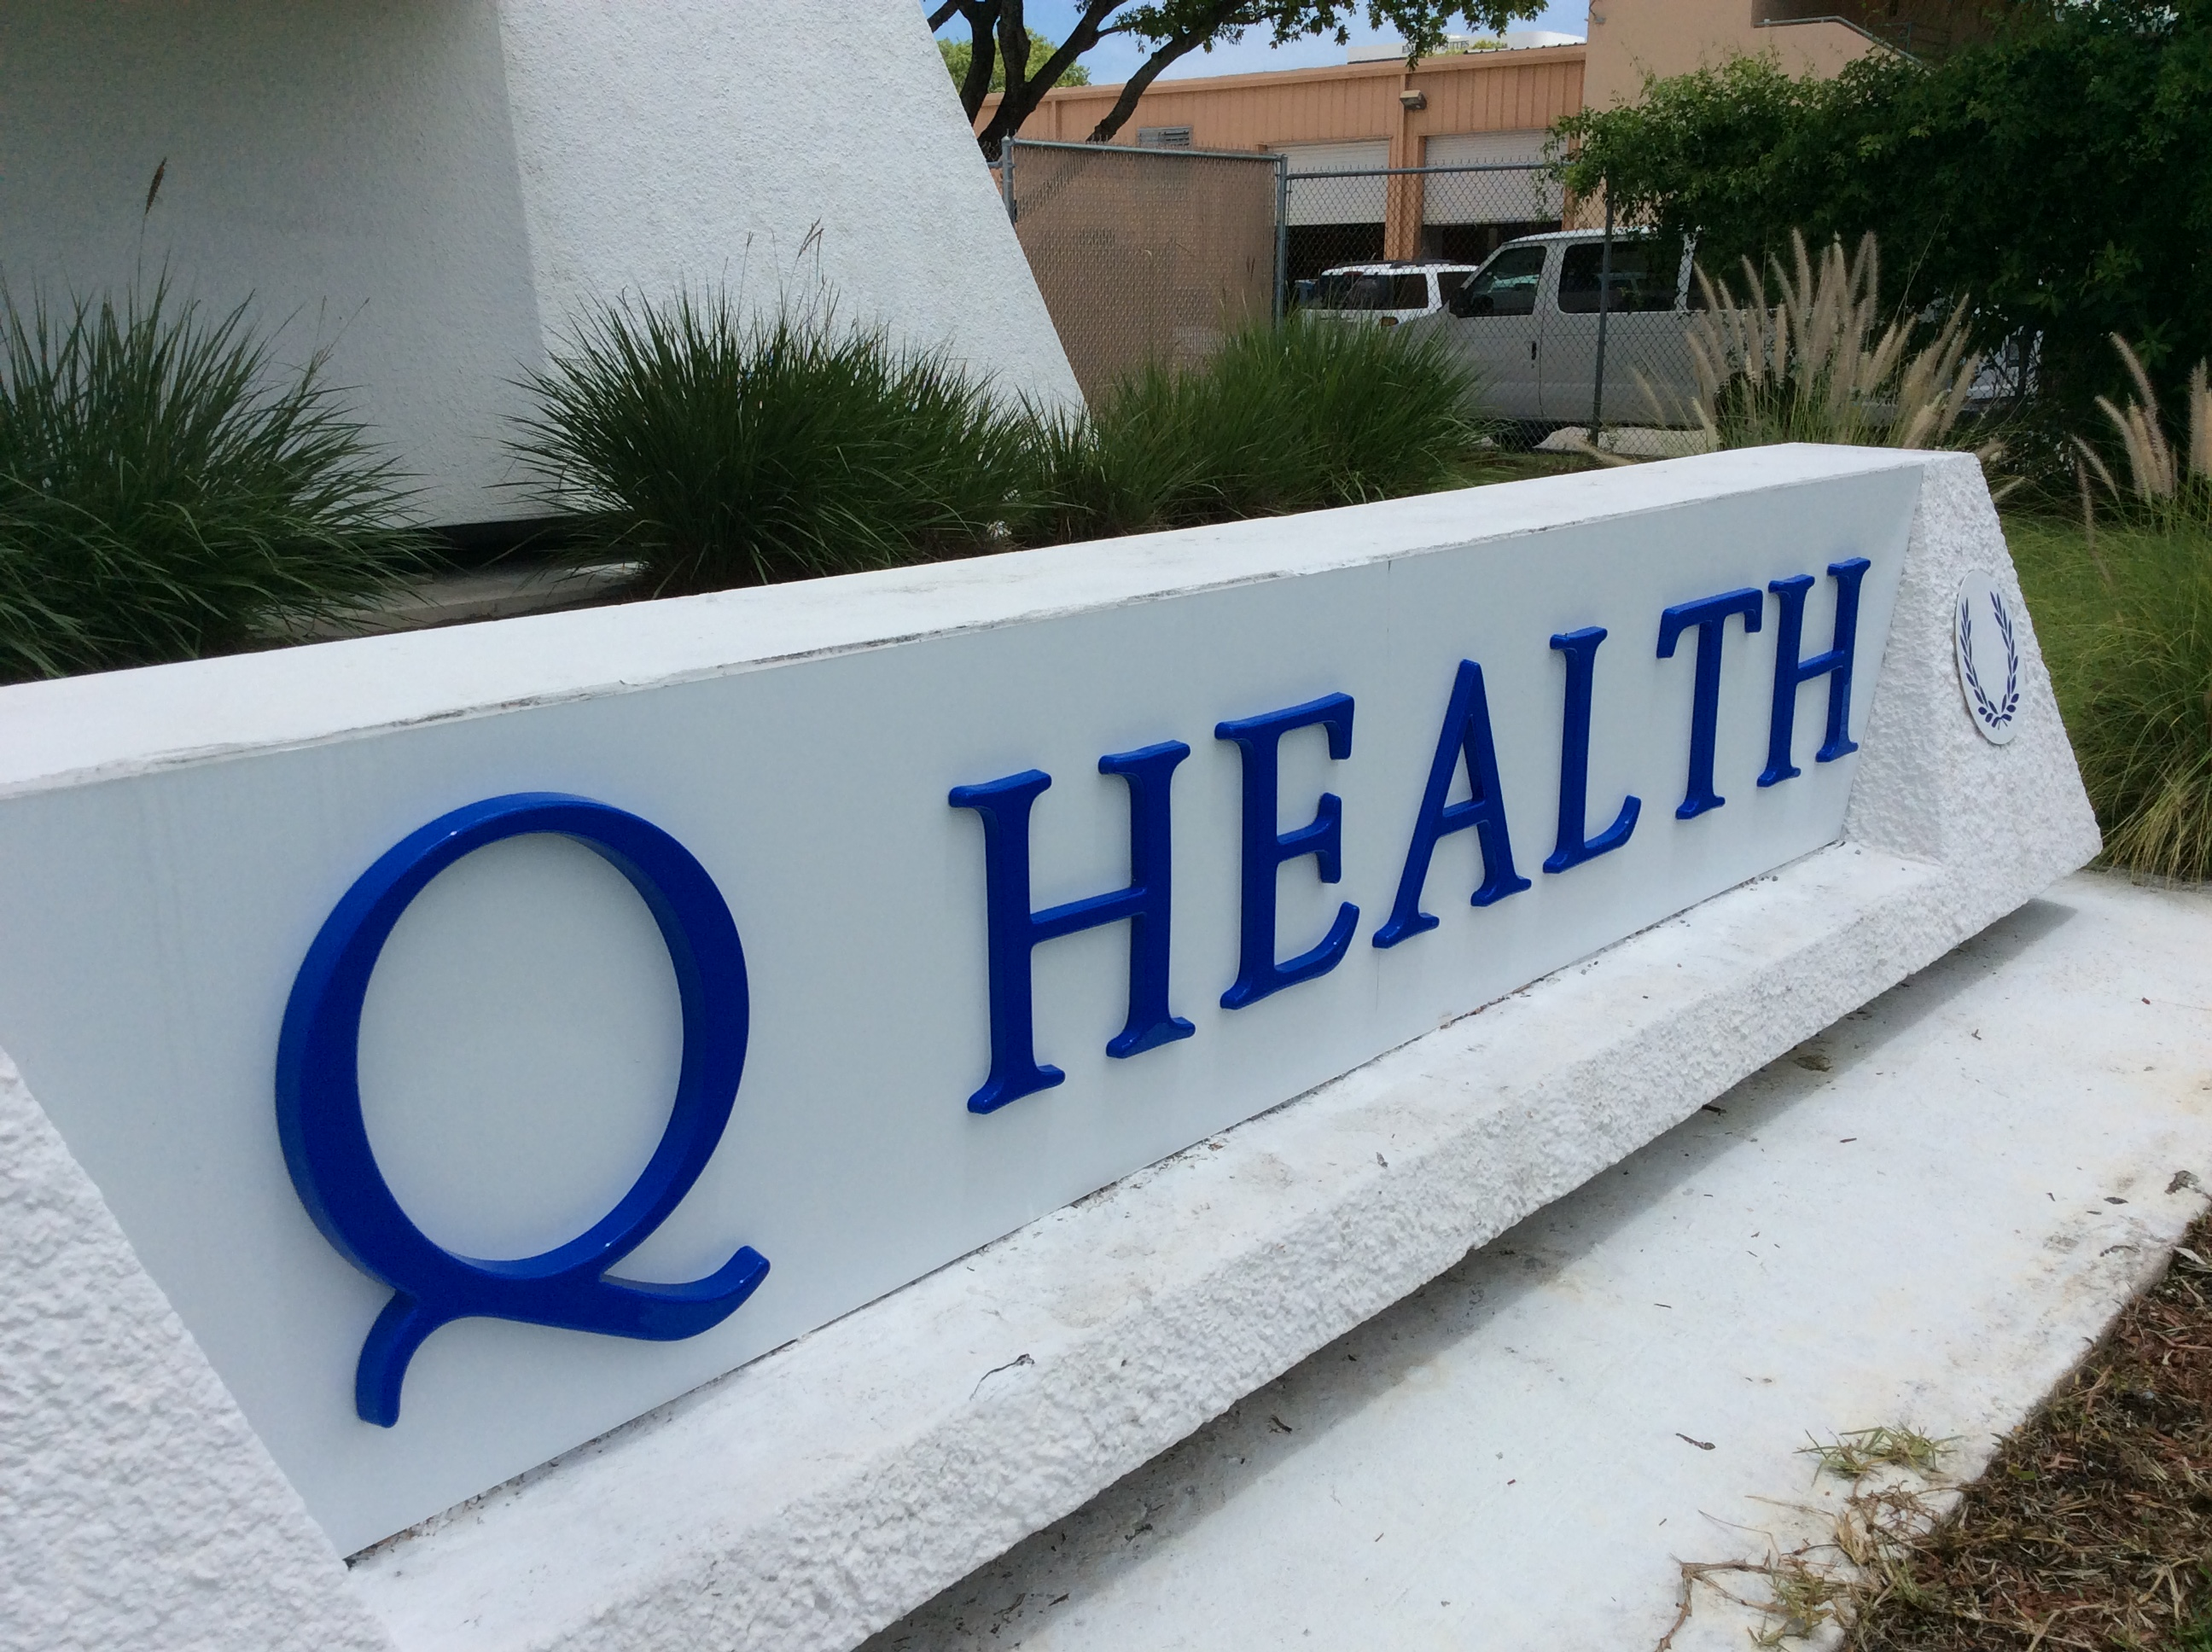 Q Health - West Palm Beach